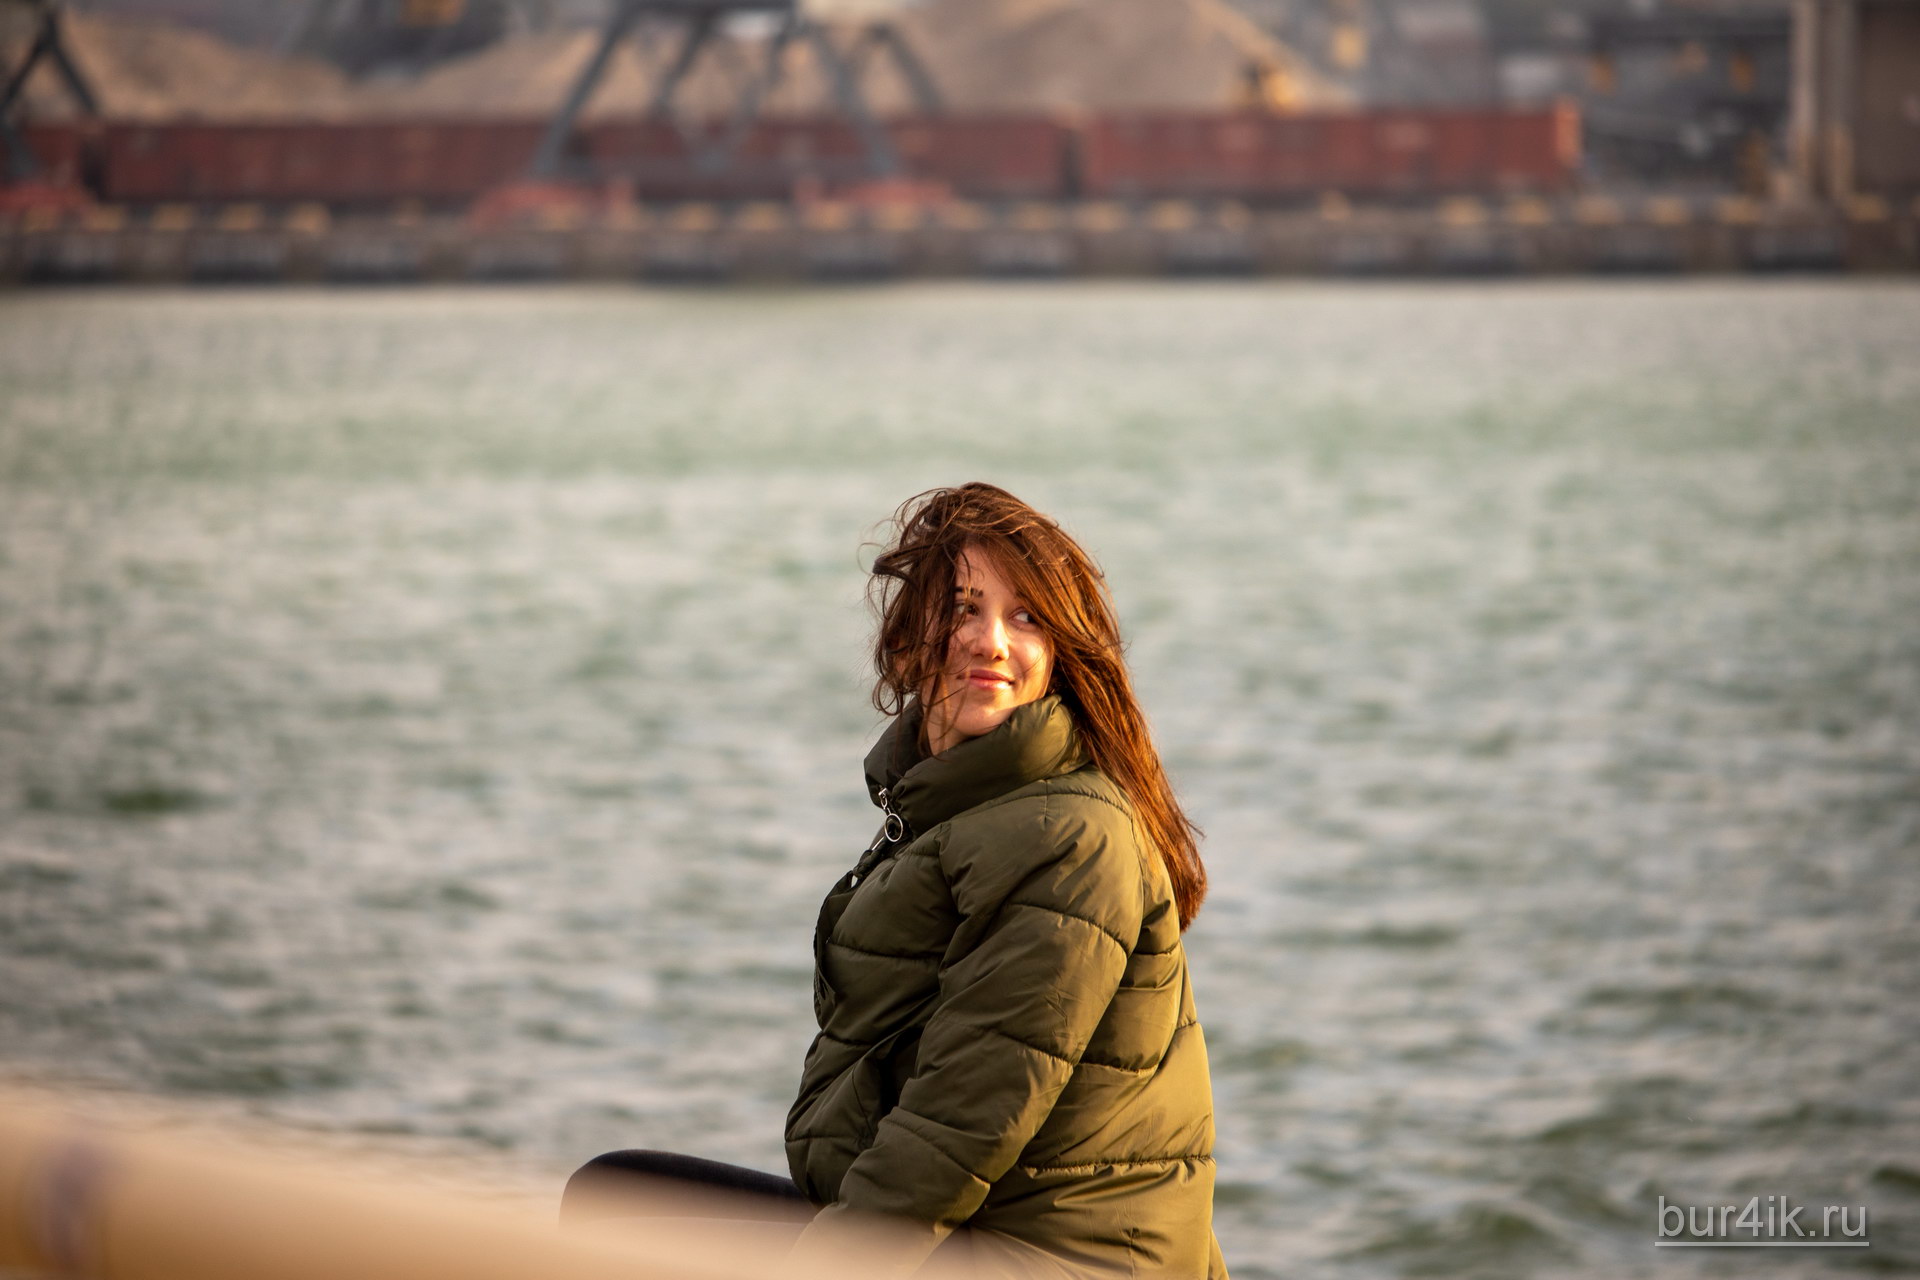 Портрет девушки в порту города Одесса 2